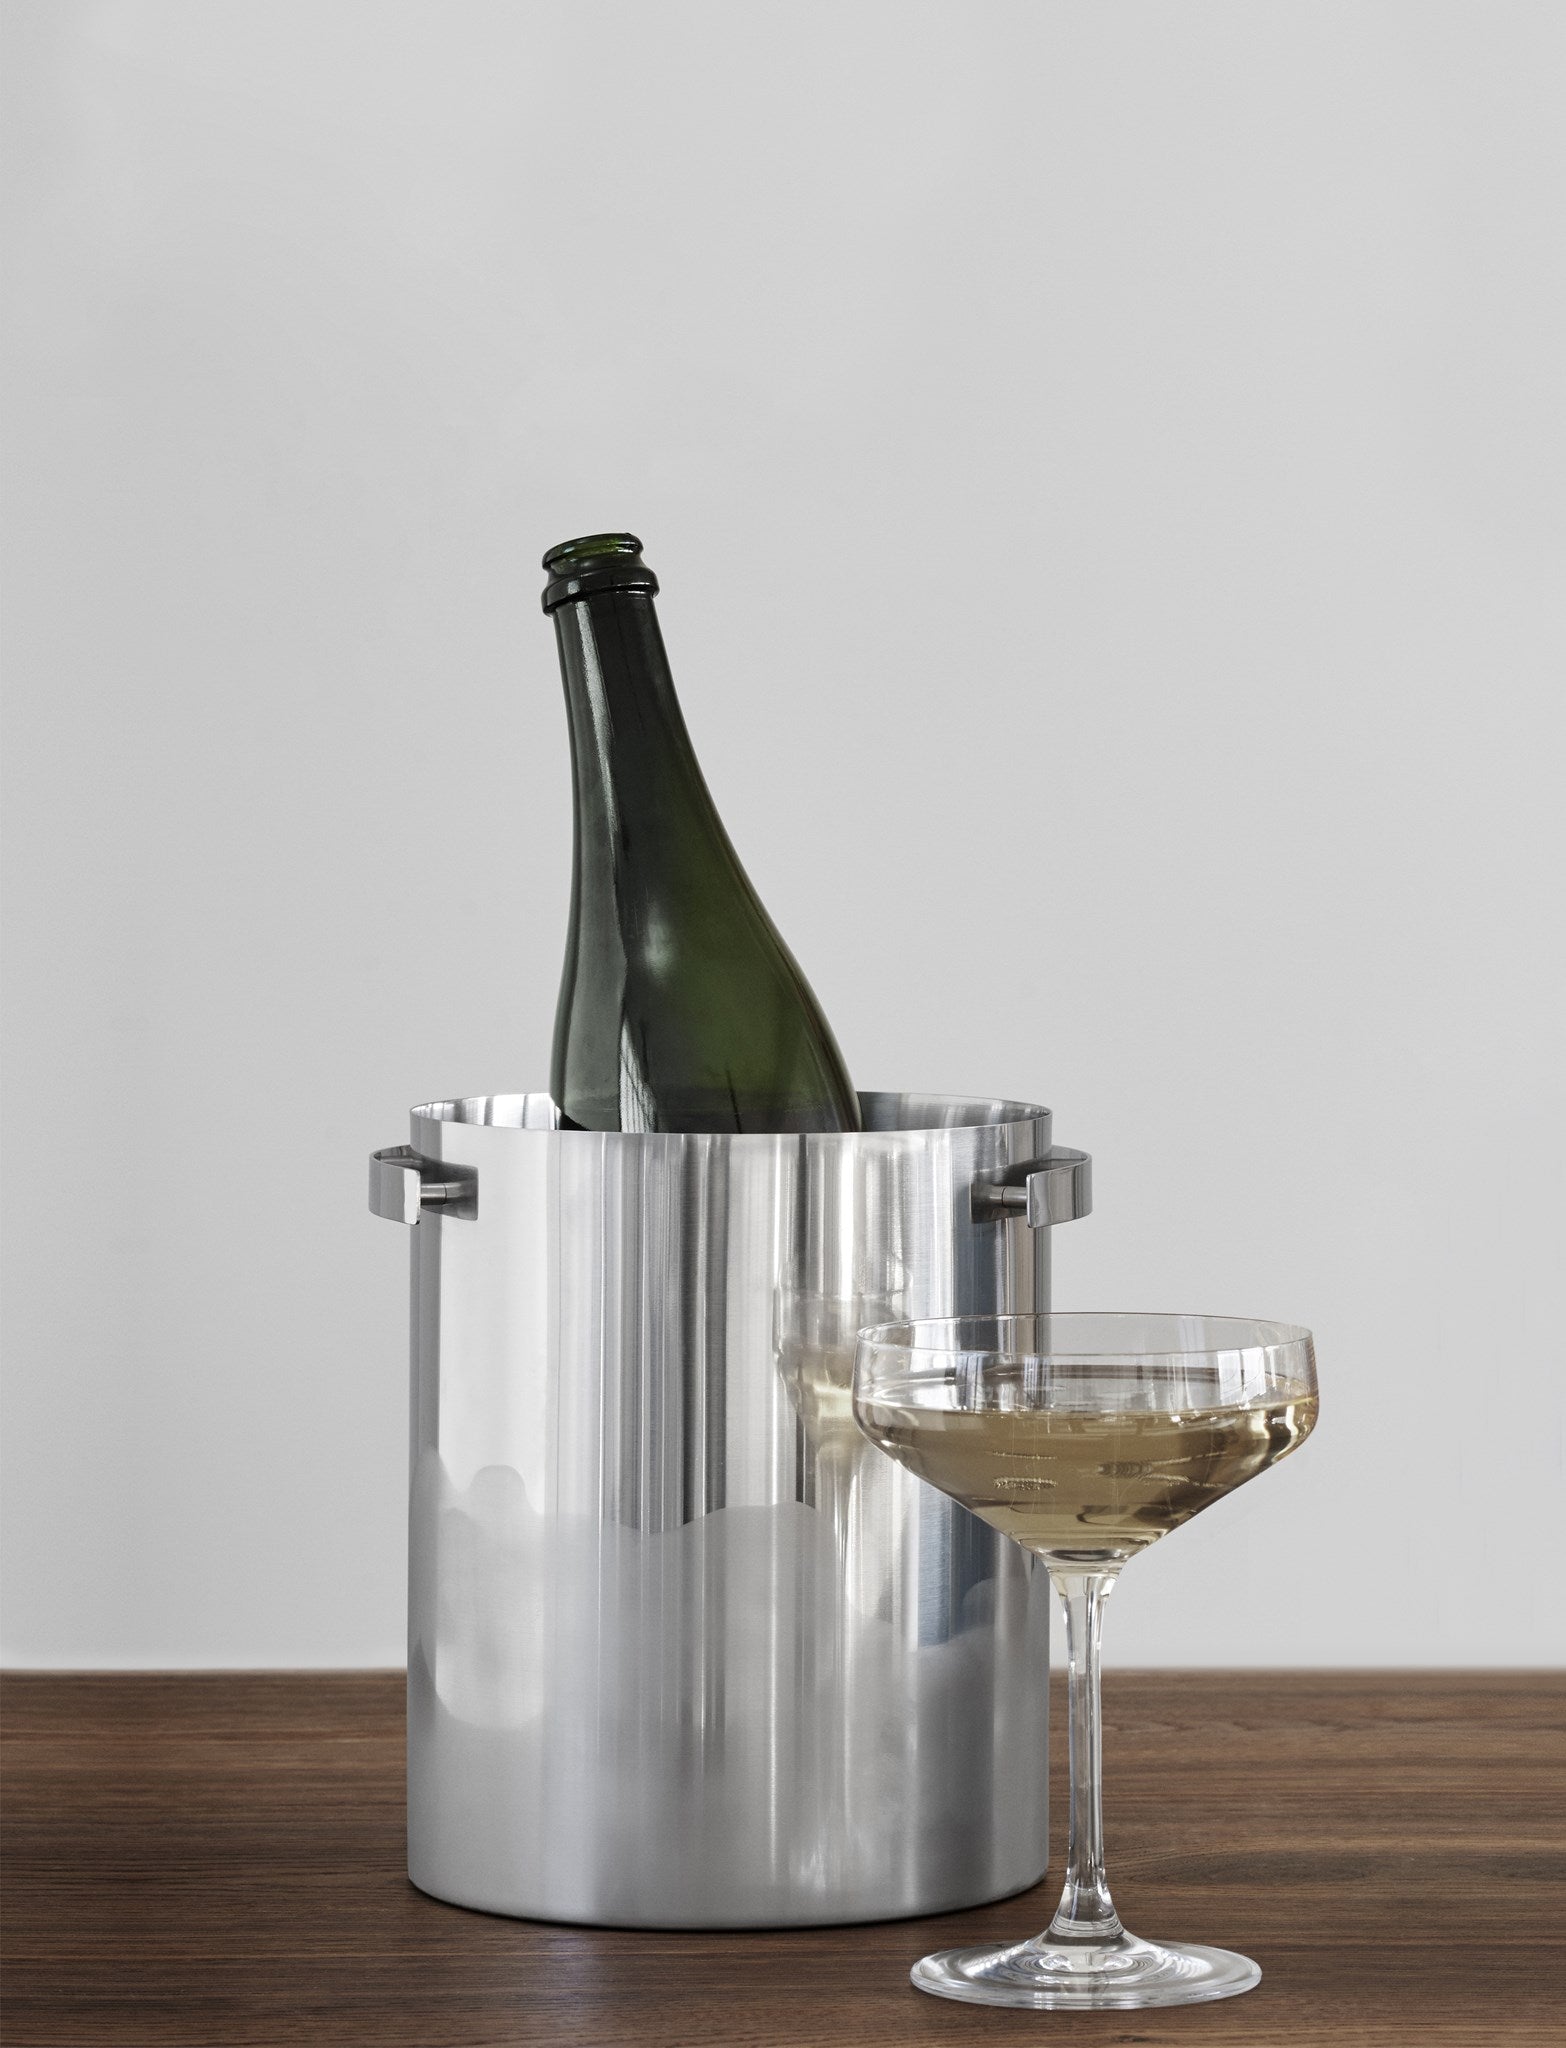 Stelton Arne Jacobsen Champagnerkühler